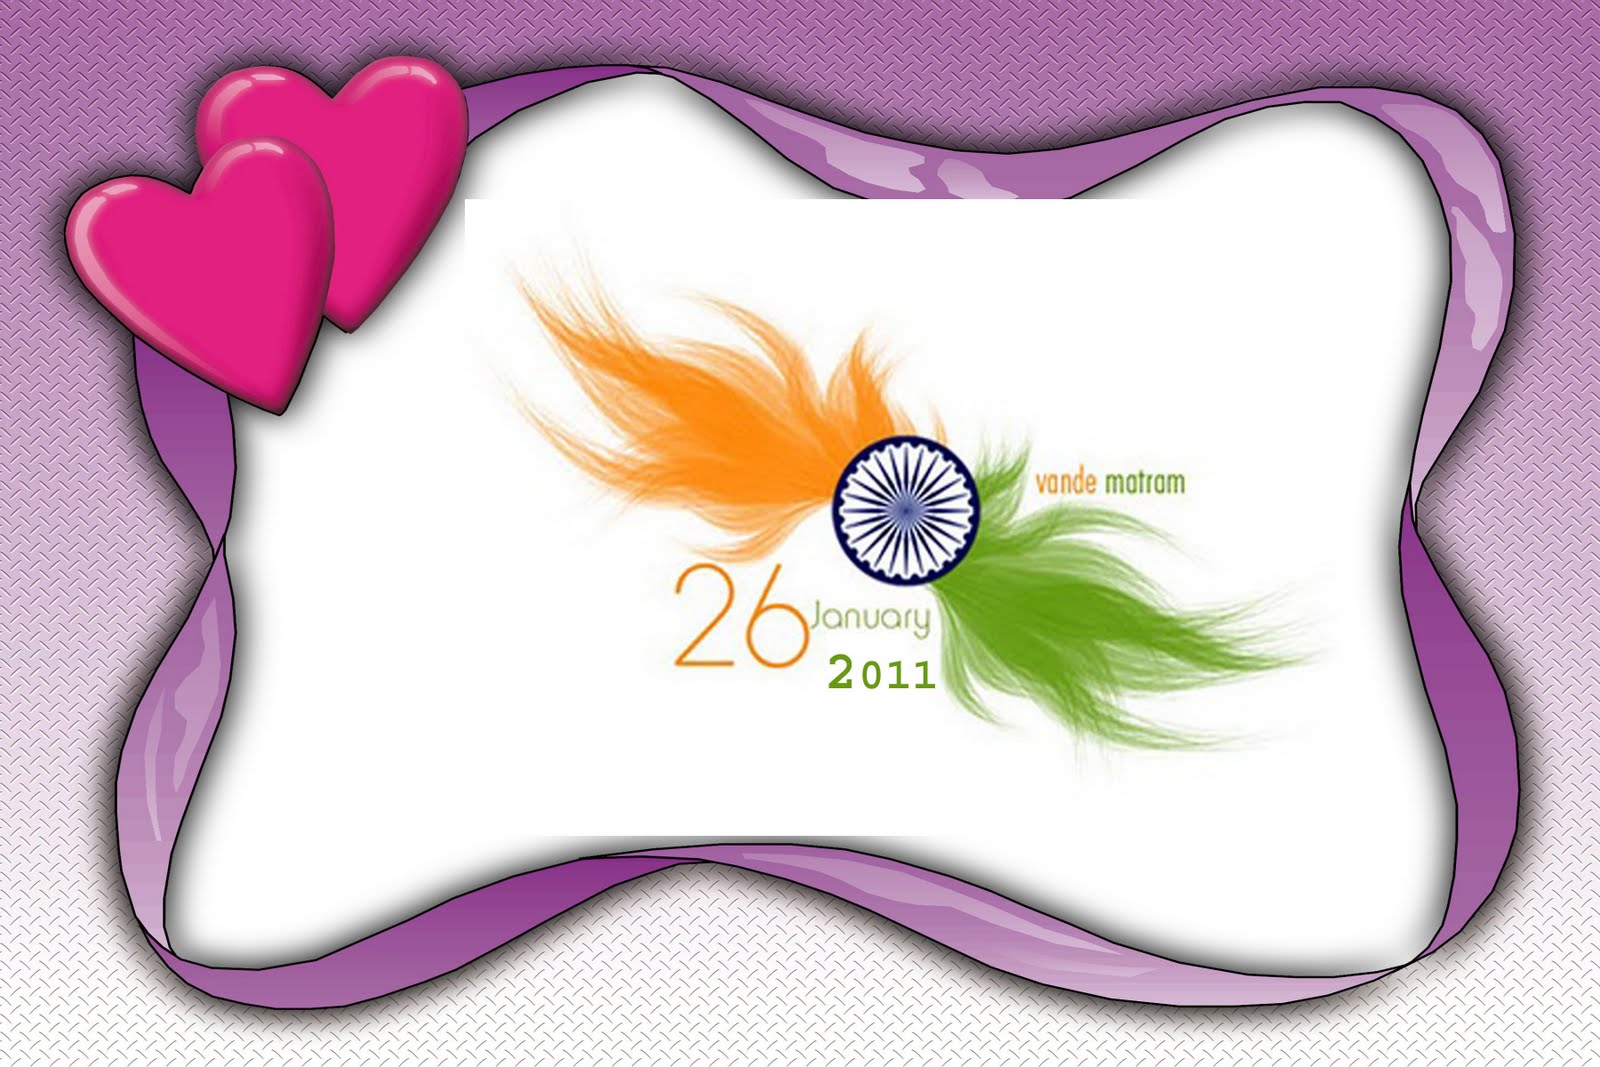 SMS Shayari 2013 - Hindi Good Morning SMS - Good Afternoon - Night ...